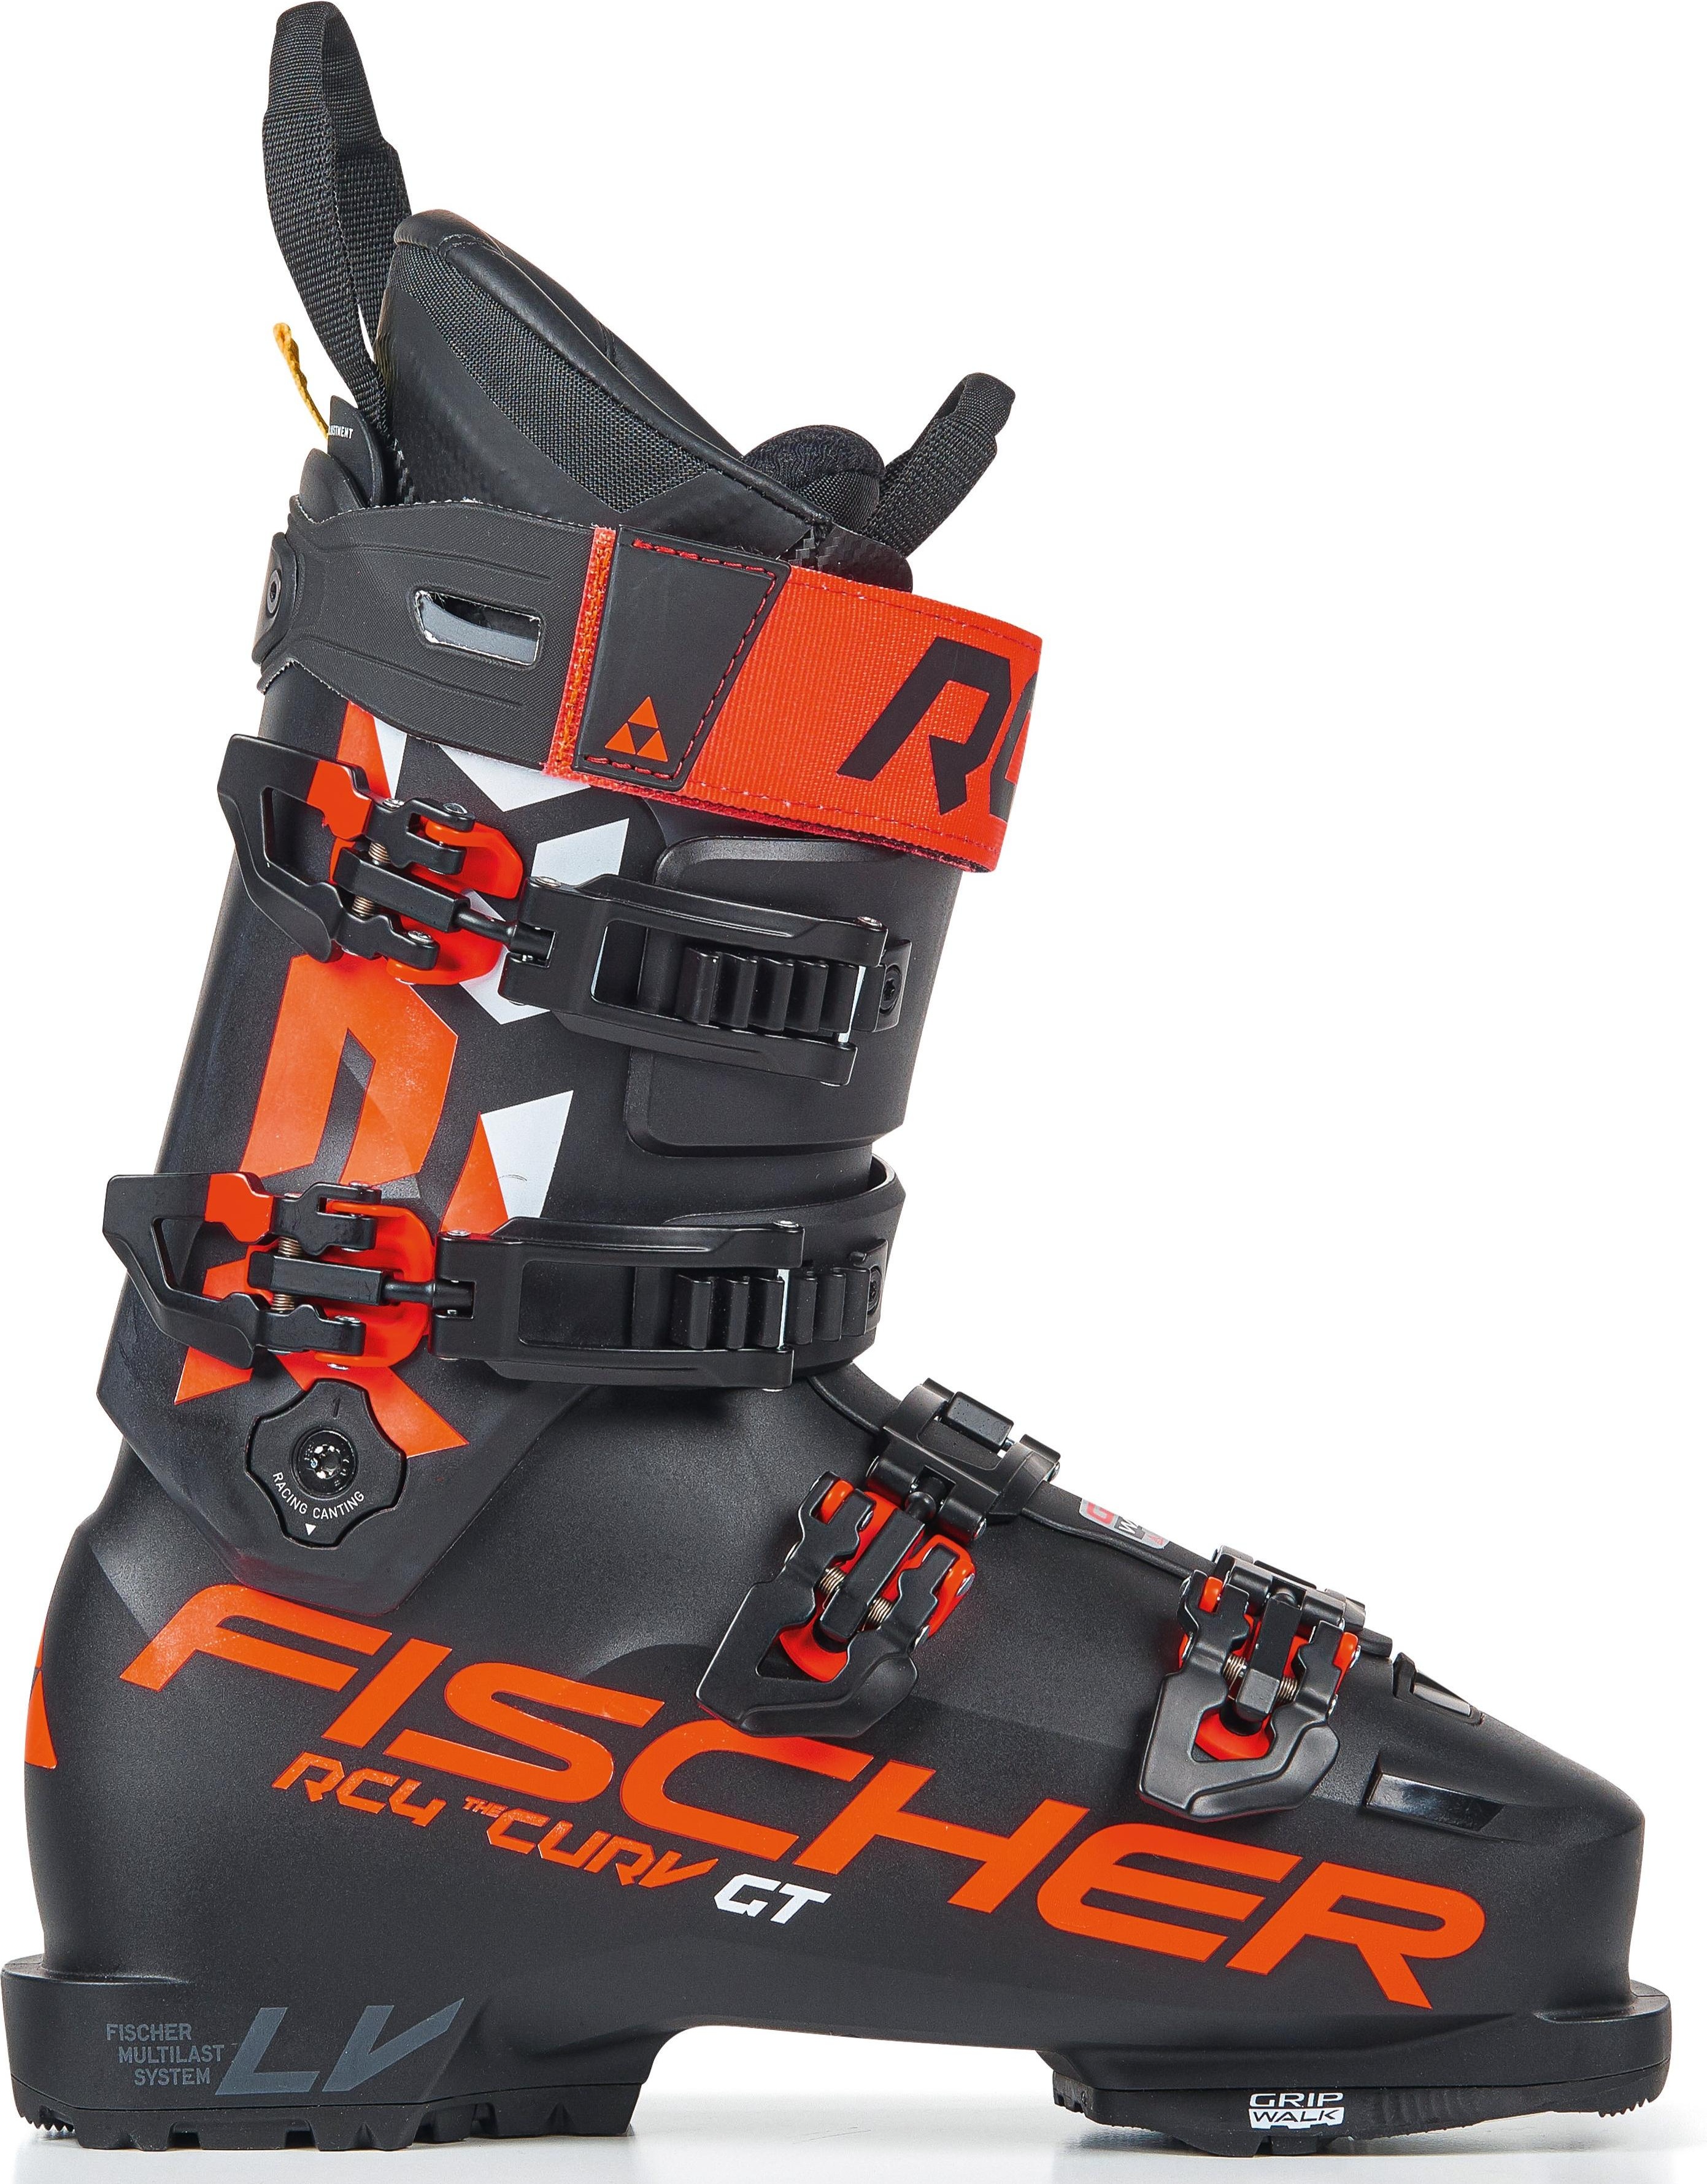 Горнолыжные ботинки Fischer Rc4 The Curv Gt 120 Vacuum Walk 2021, black/black, 27.5